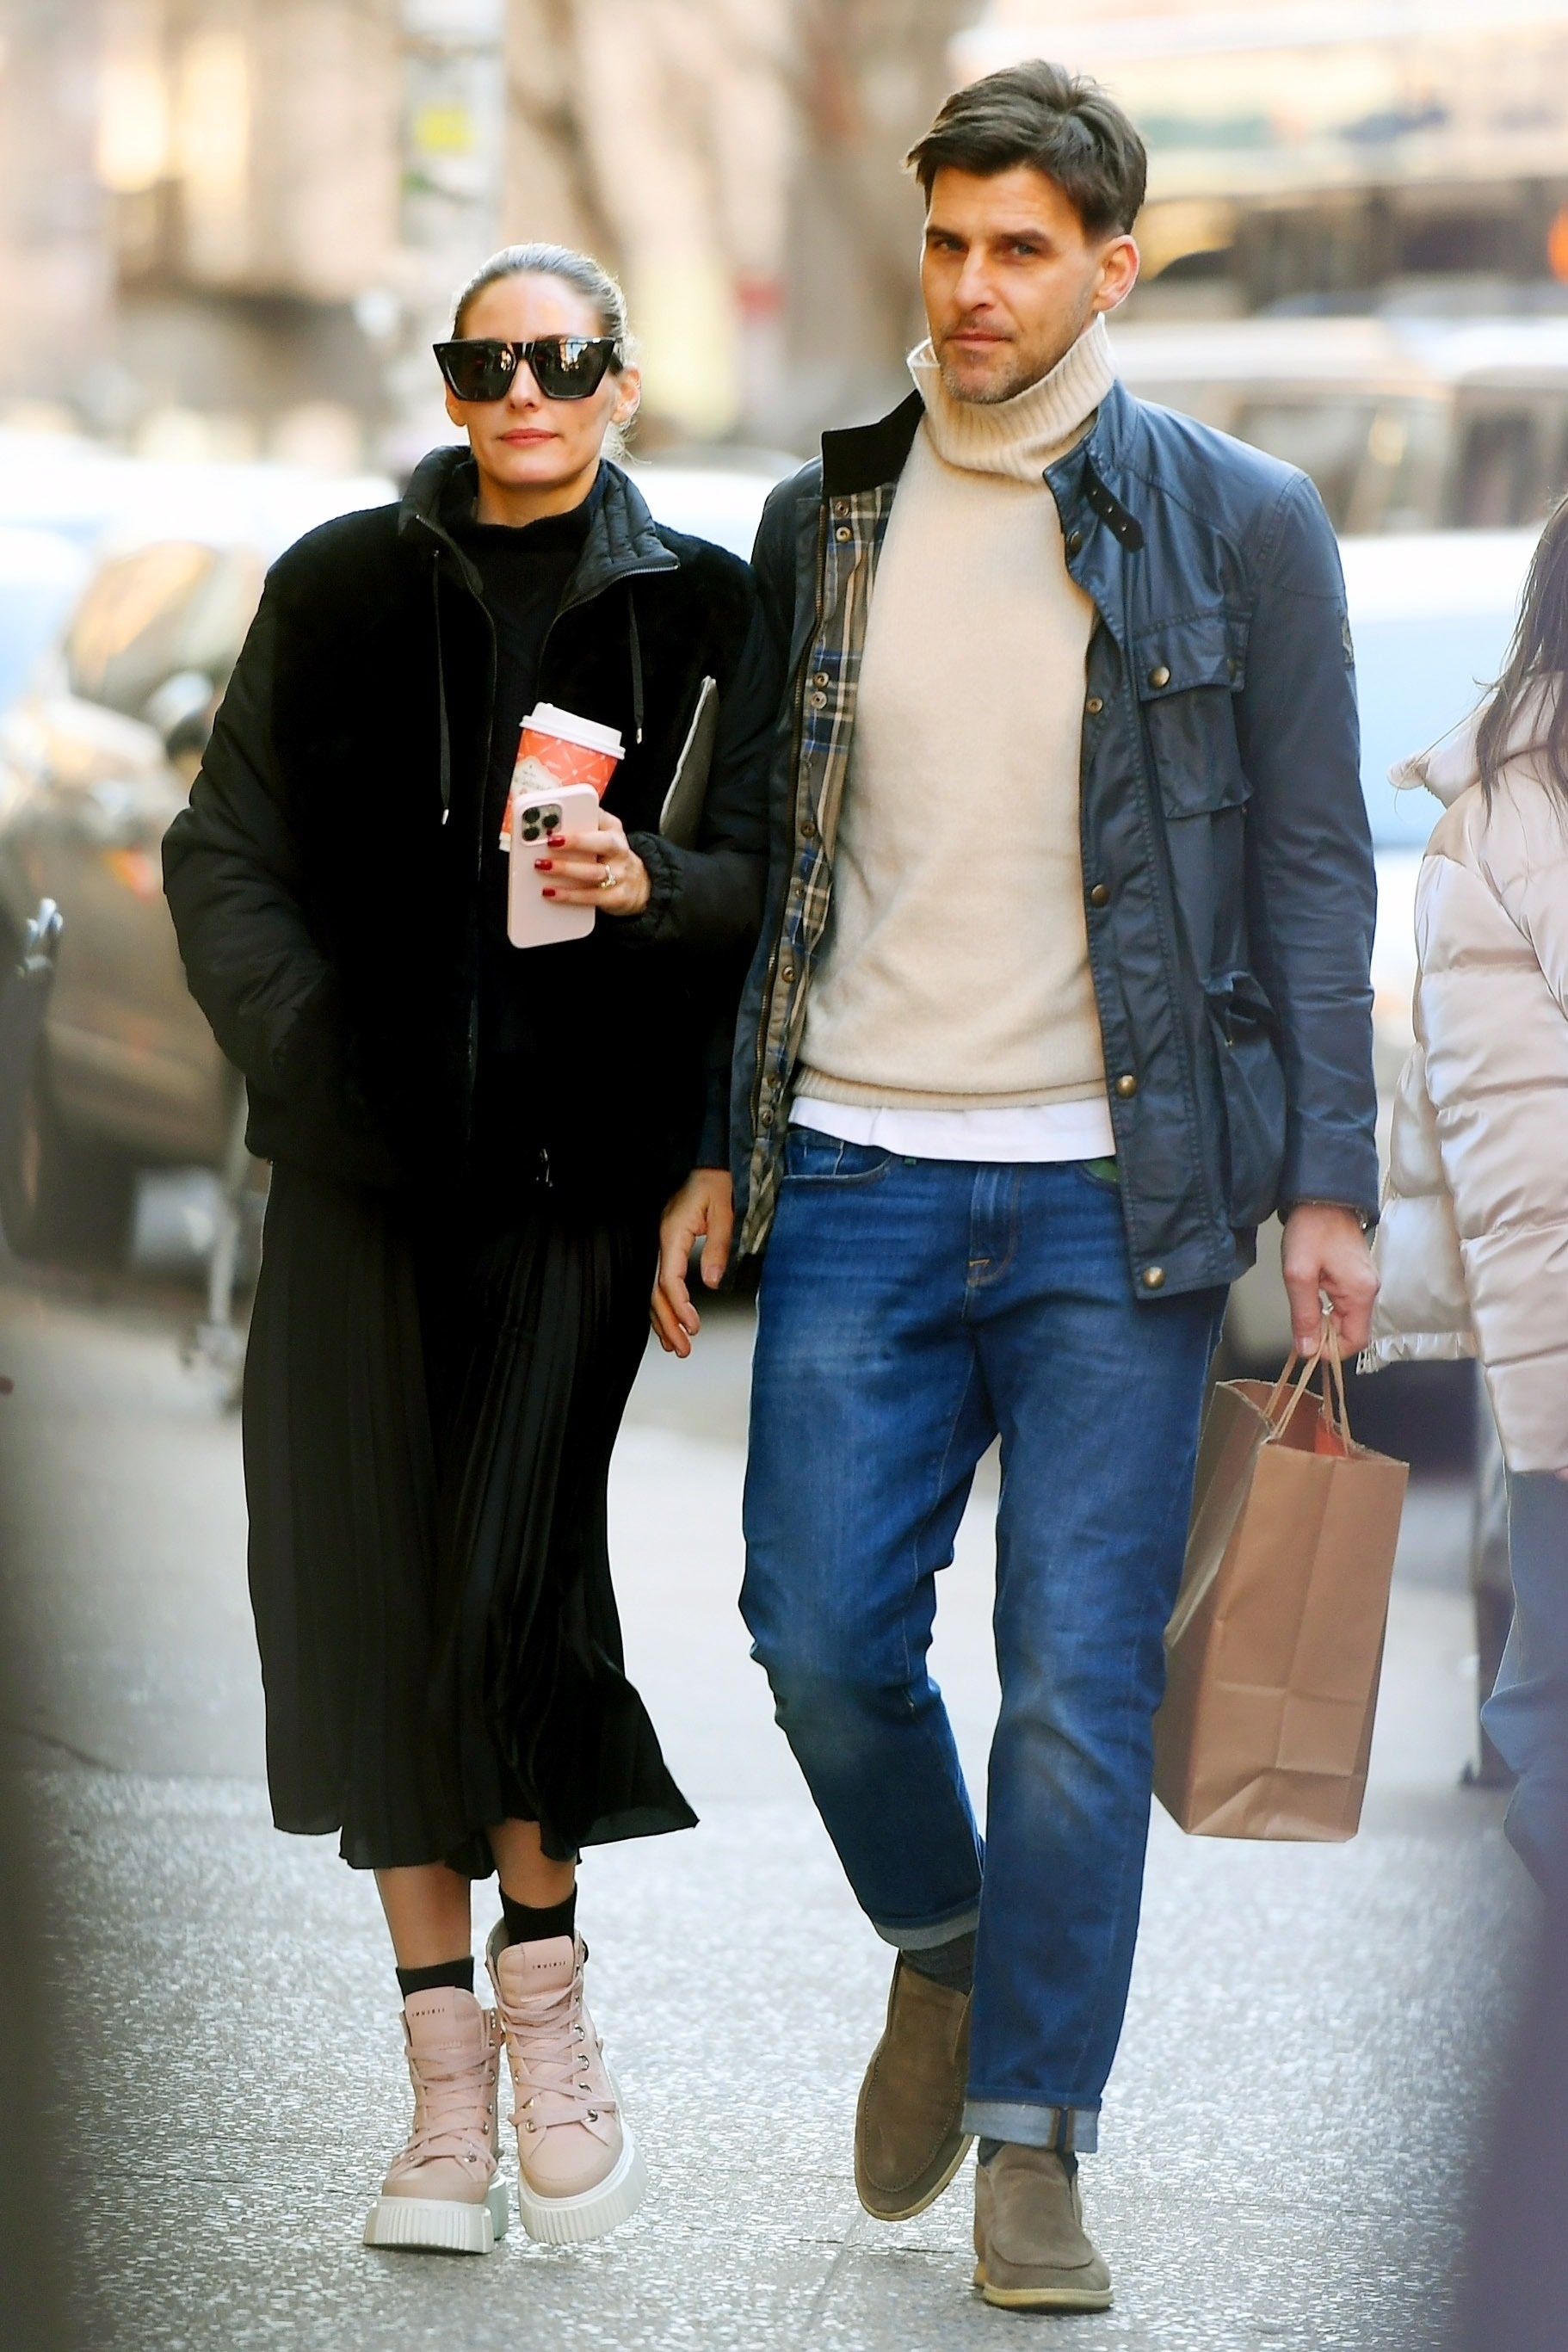 Olivia Palermo y su pareja, Johannes Huebl, dieron un romántico paseo por las calles de Nueva York. Se detuvieron en una tienda a comprar café para llevar y siguieron su camino